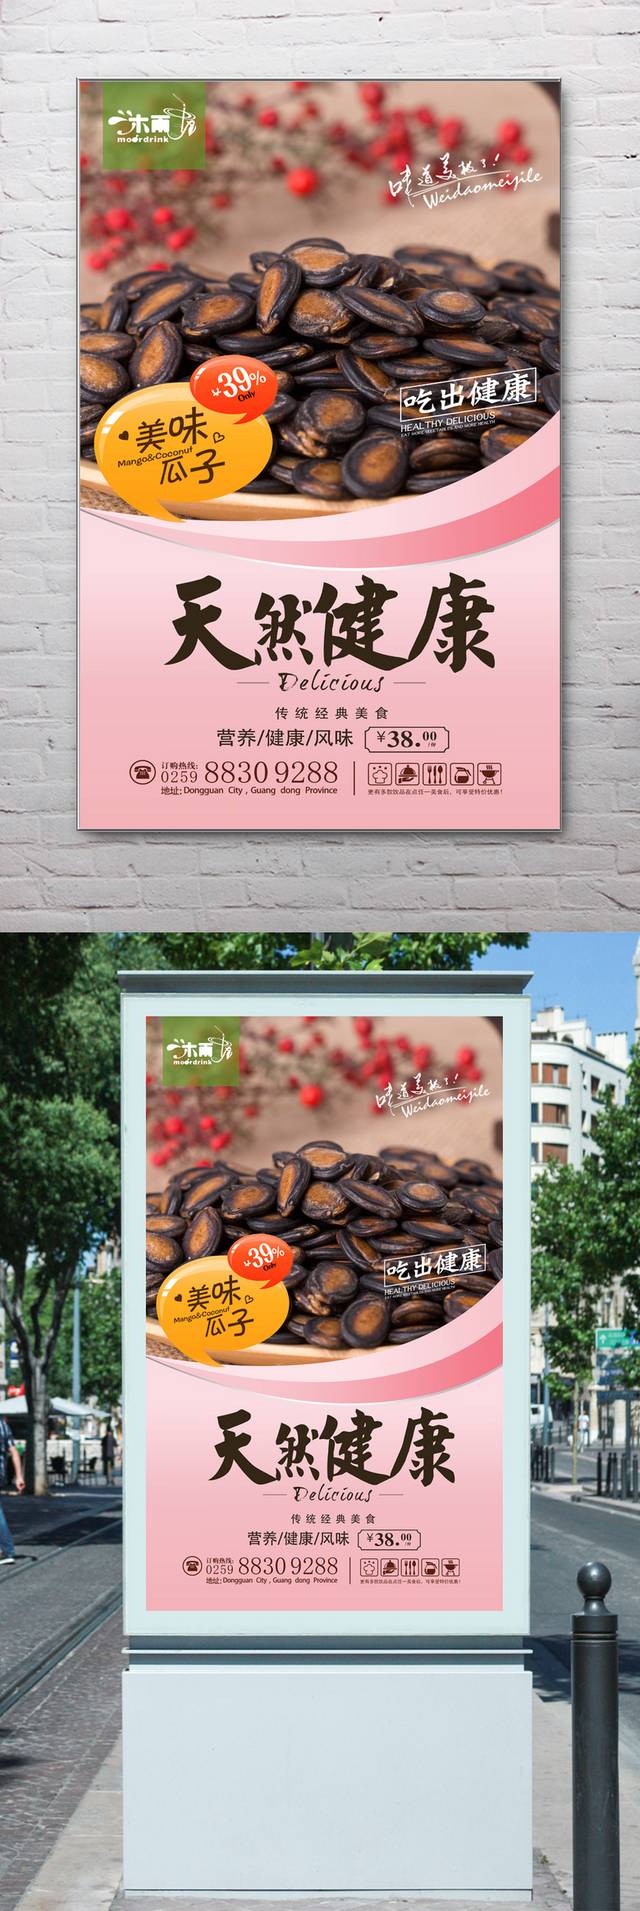 高清瓜子零食宣传海报设计下载